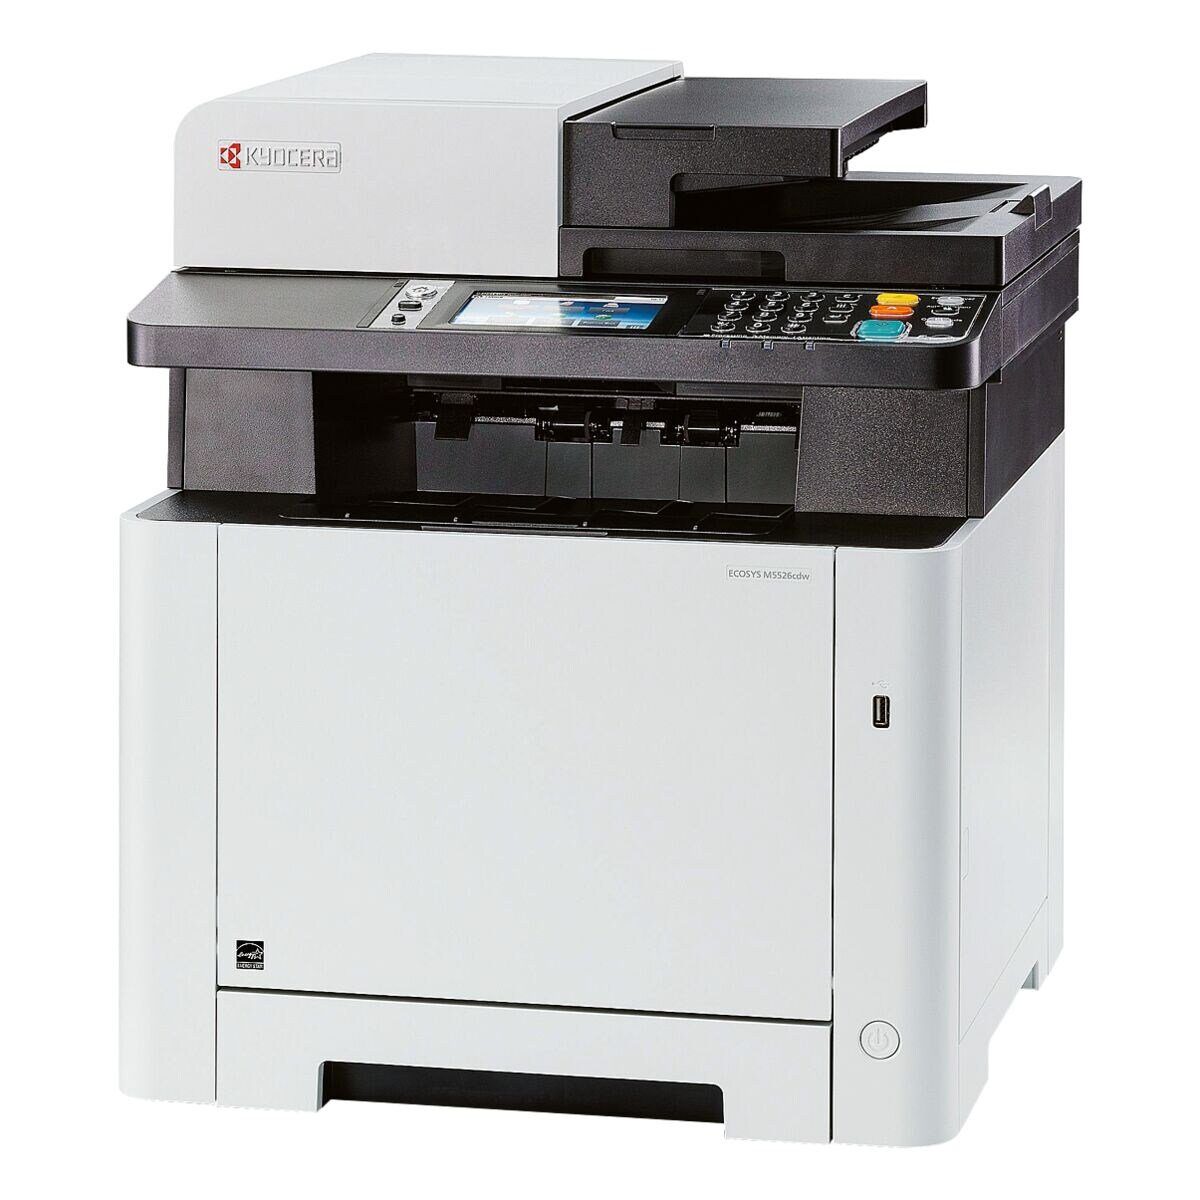 Kyocera ECOSYS M5526cdw Multifunktionsdrucker, (4-in-1, LAN / WLAN, A4)